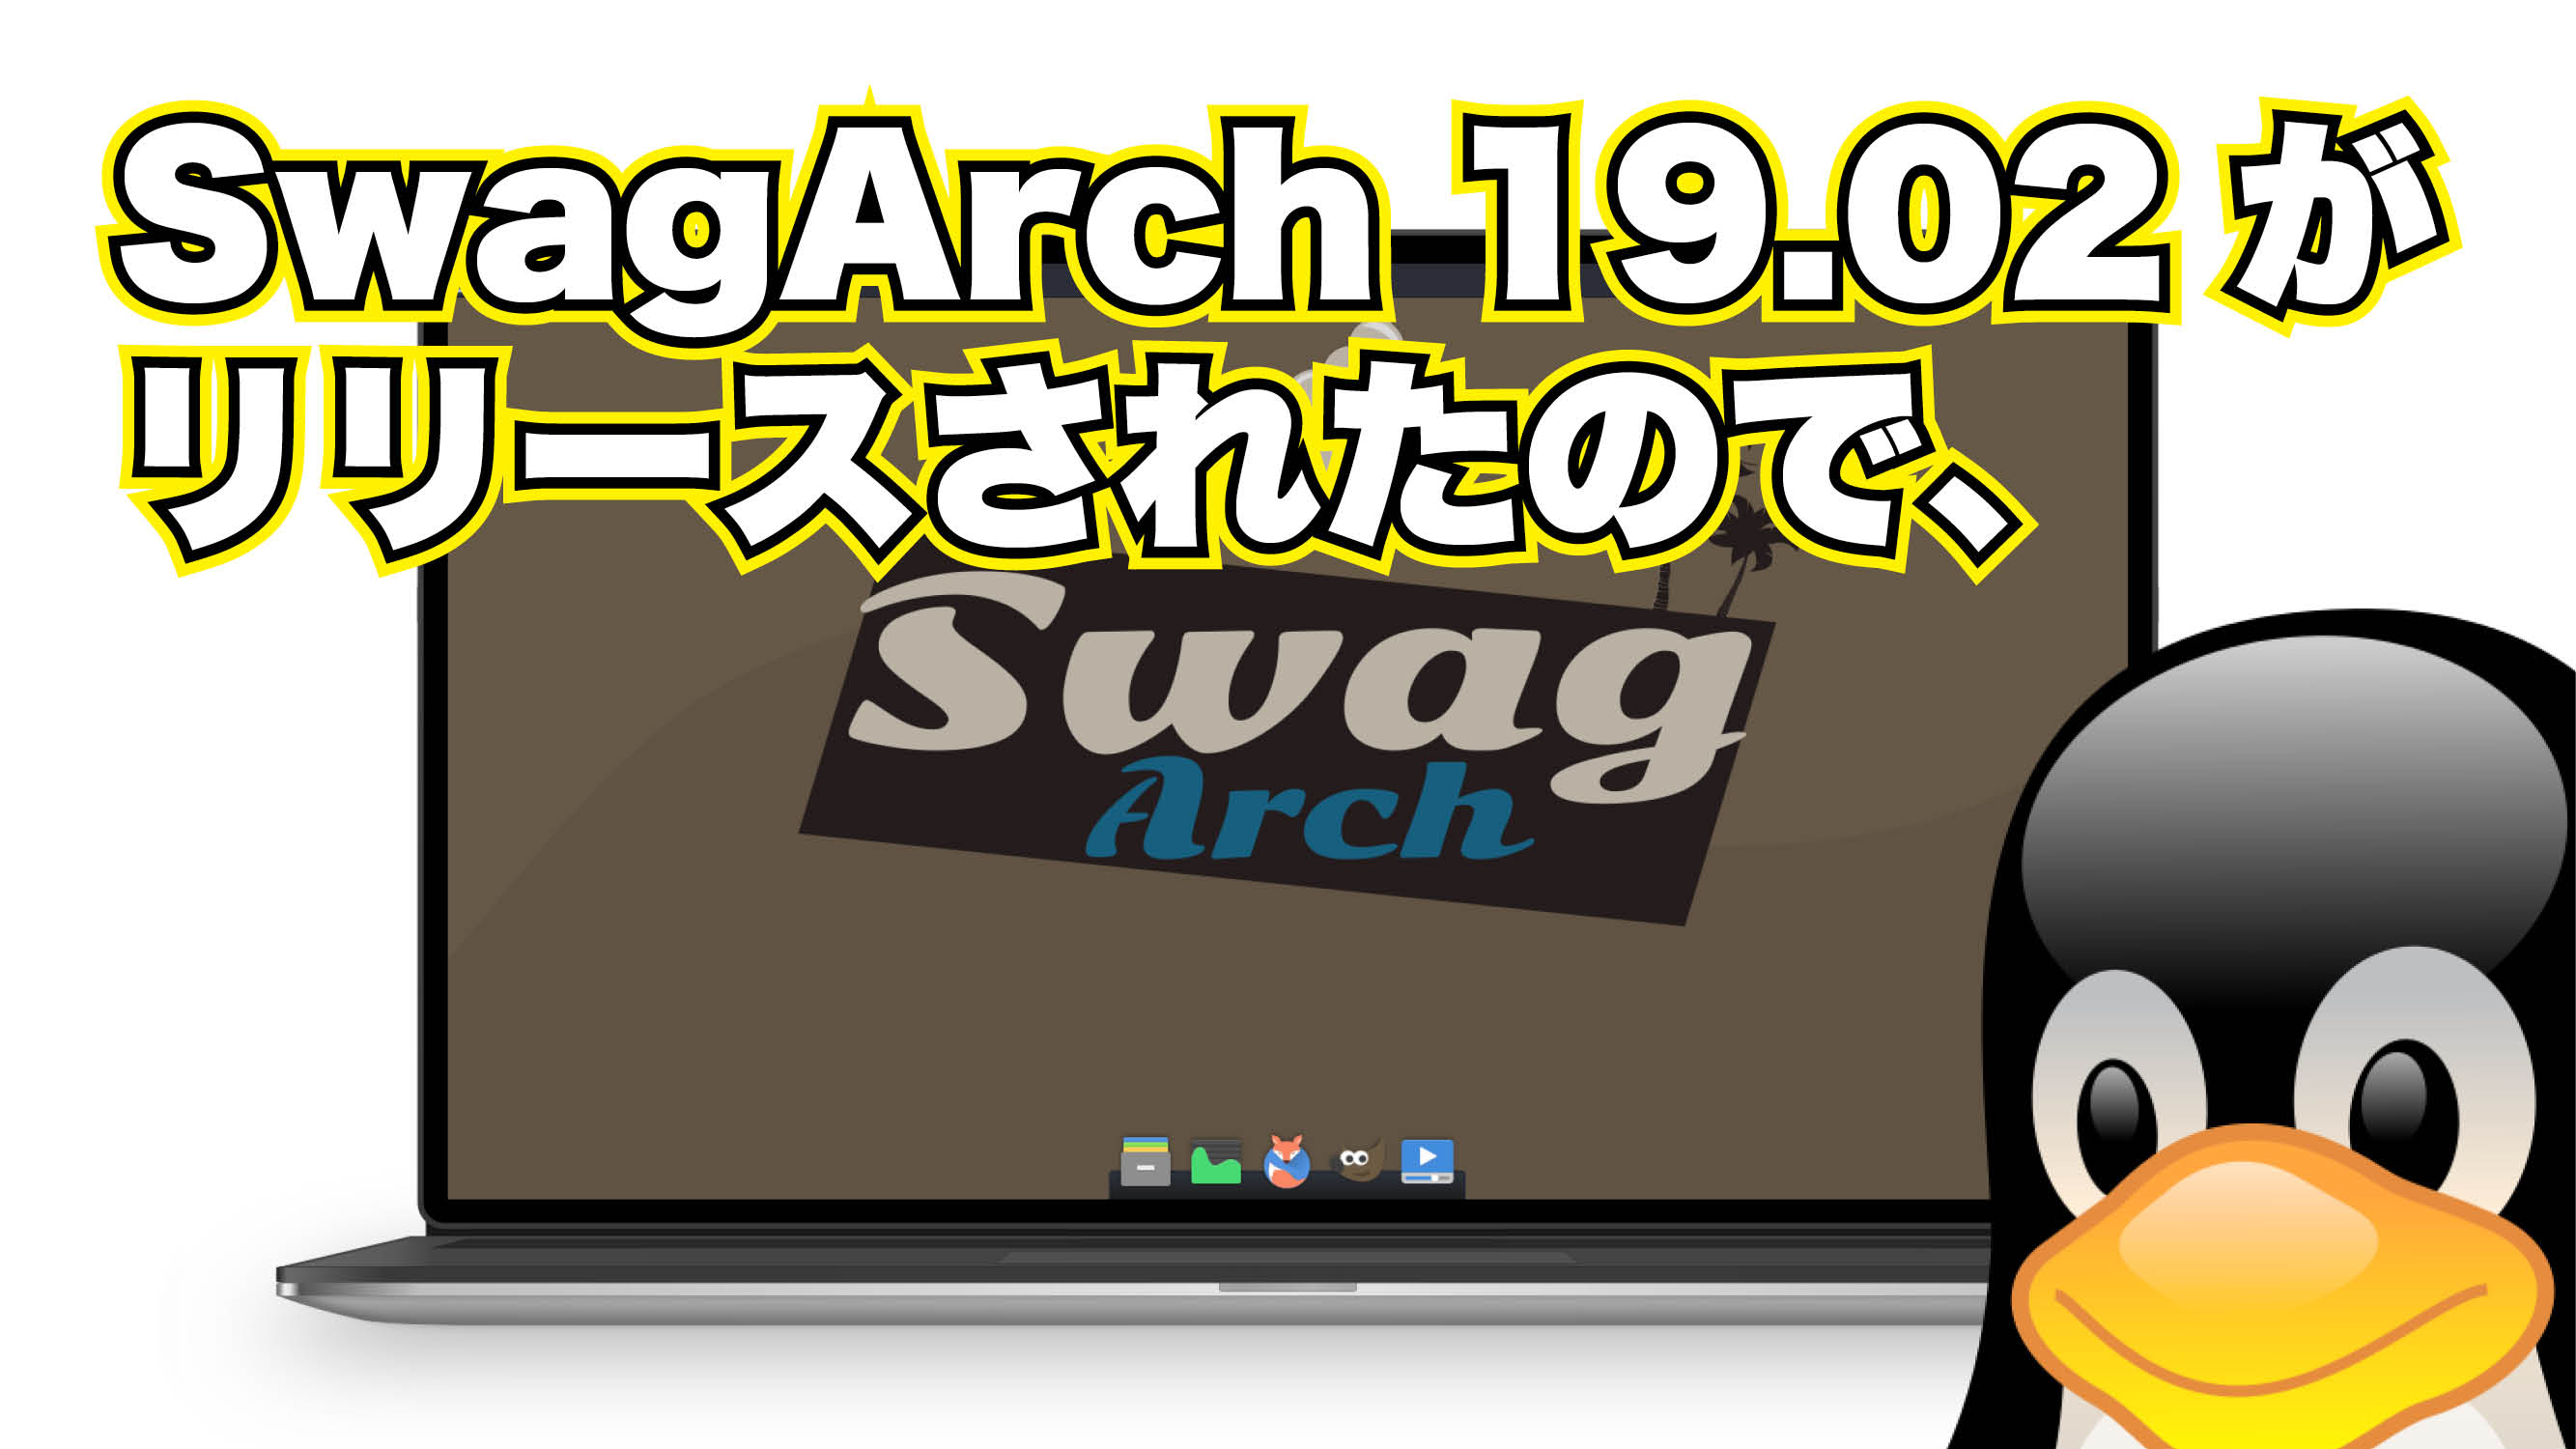 SwagArch 19.02 がリリースされたので、